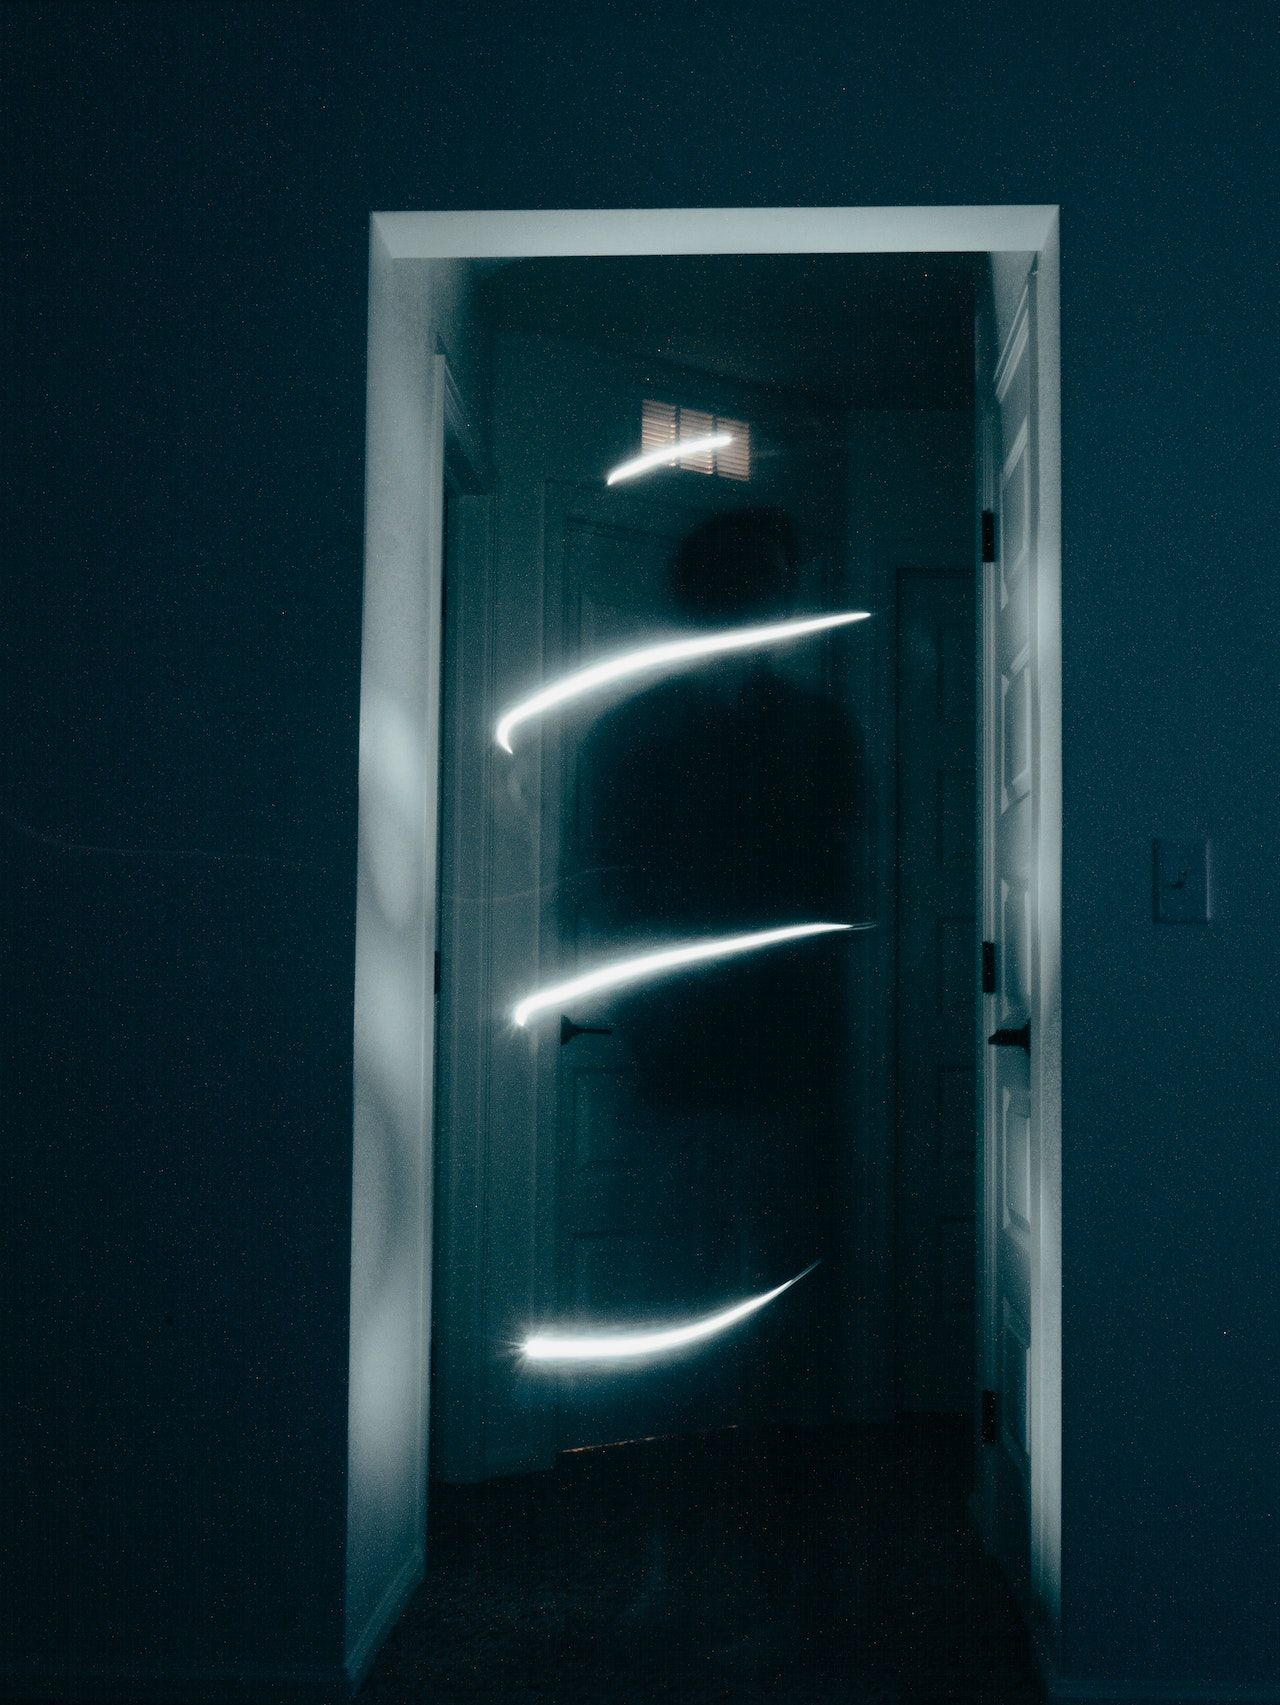 Ghostly figure in a doorway